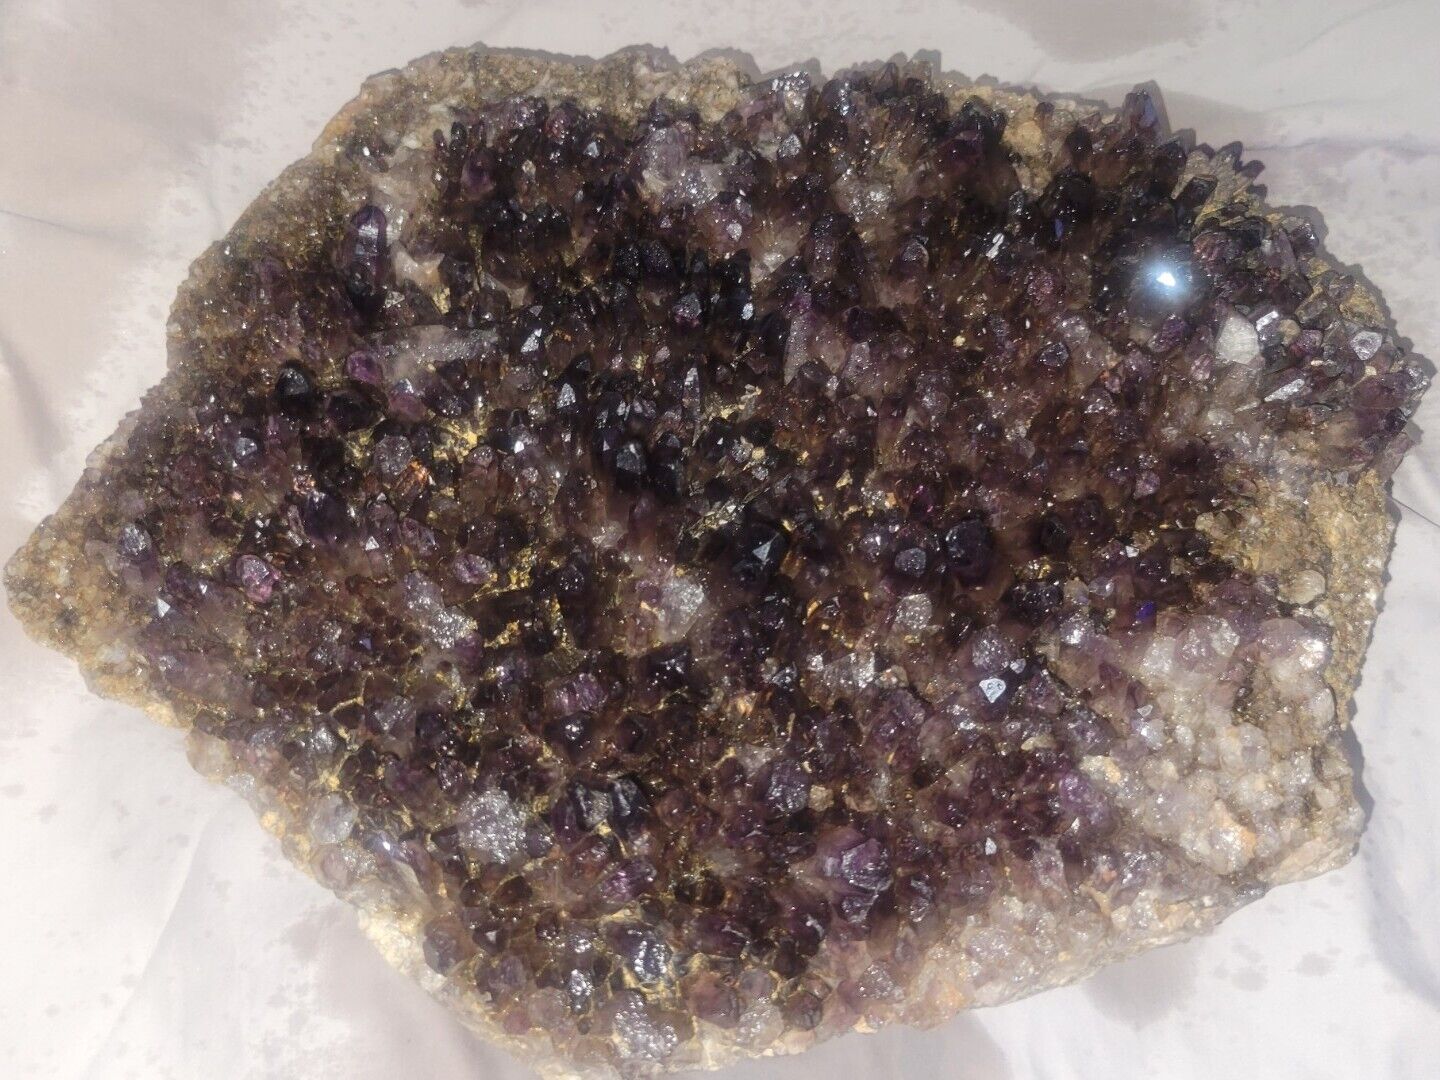 19LB Large Natural Amethyst Cluster Specimen Quartz Crystal Reiki 12x9x3.5in